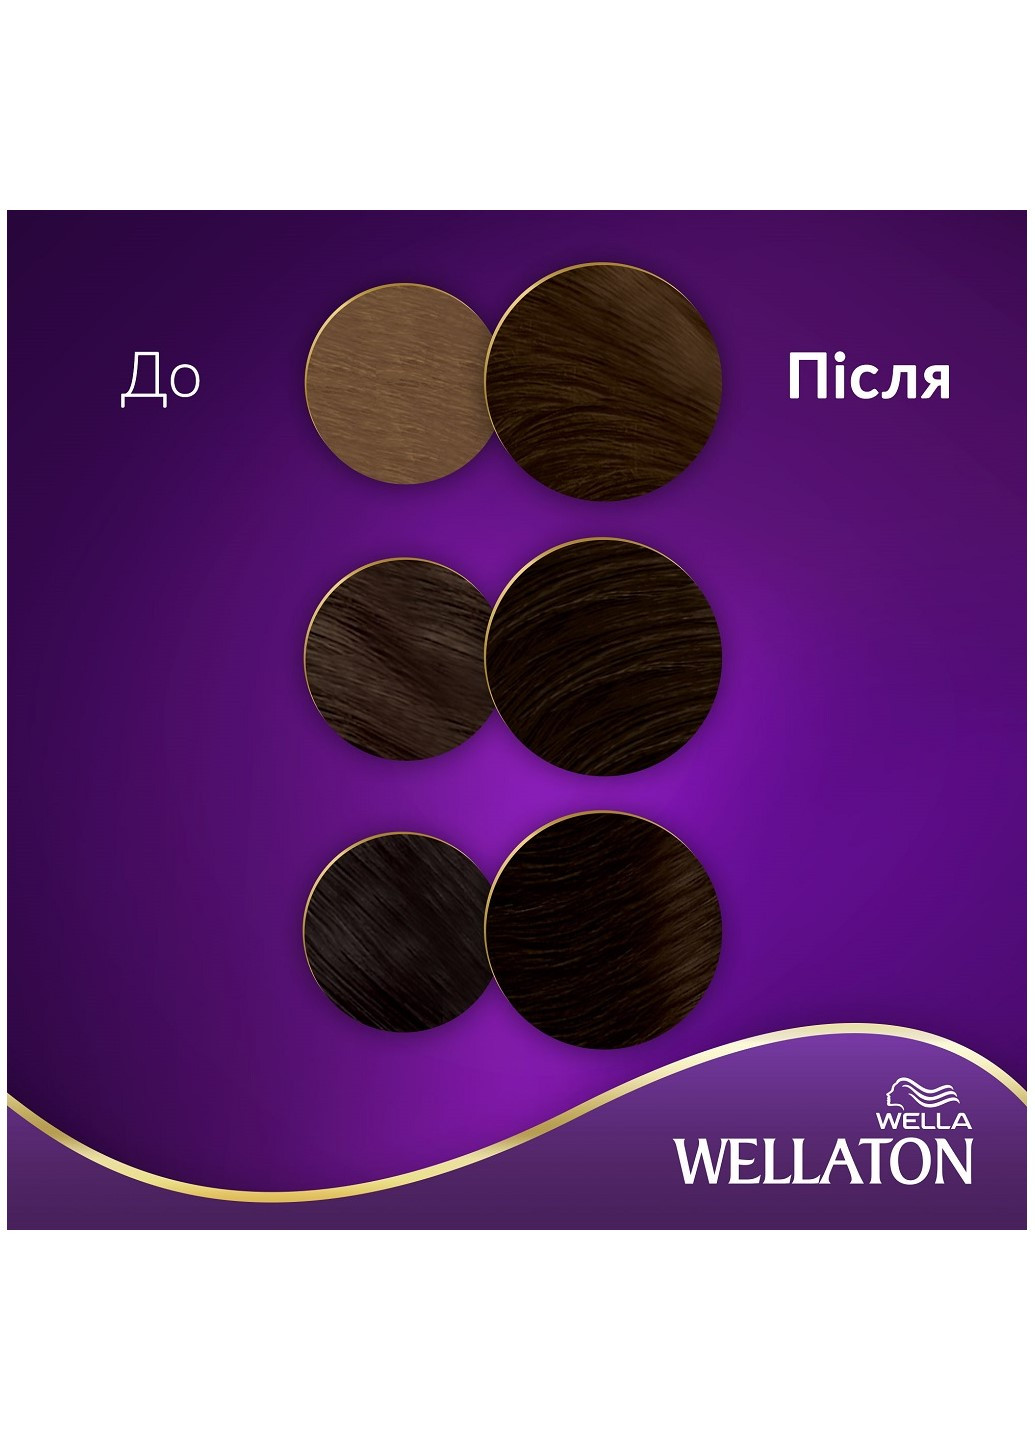 Стійка кремфарба для волосся Темний шатен 3/0 Wellaton - (197835602)